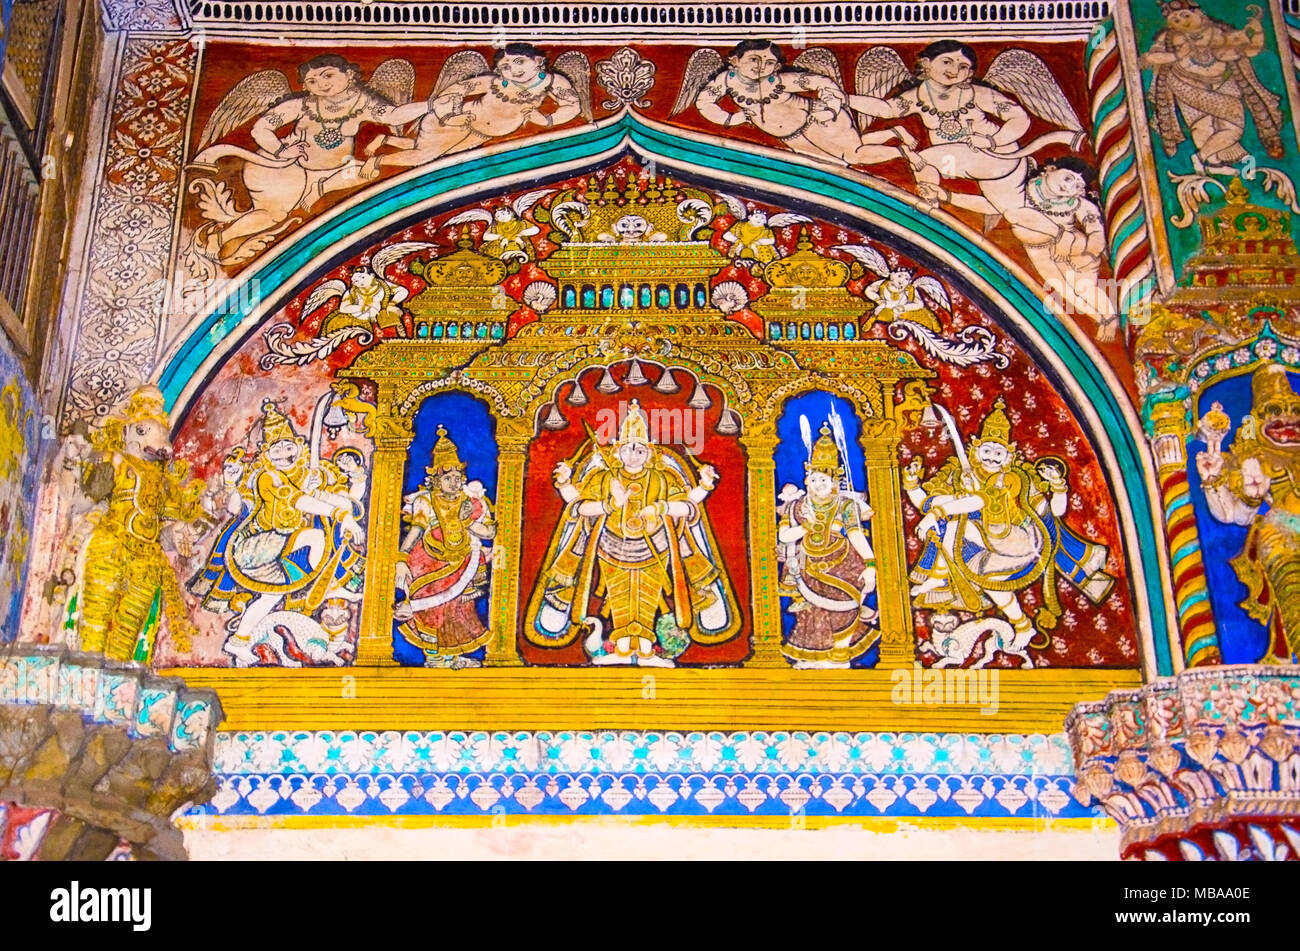 Farbenfrohe Gemälde an der Decke Wand des Darbar Halle des Thanjavur Maratha Palace, Thanjavur, Tamil Nadu, Indien. Vor Ort als Wohnsitz der Bh bekannt Stockfoto